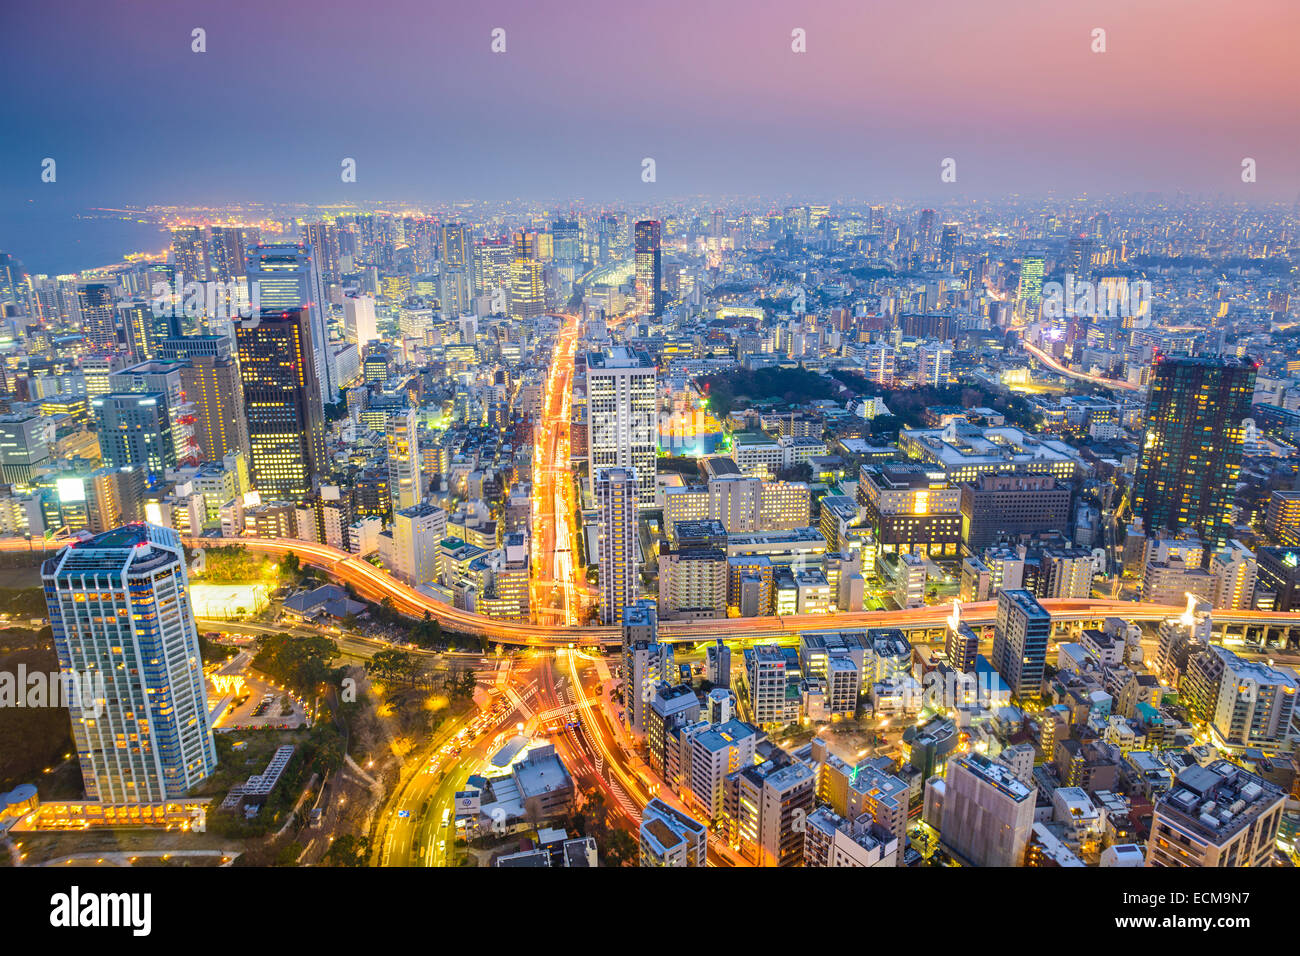 Tokyo, Japon ville au crépuscule au-dessus de la jonction de l'autoroute. Banque D'Images